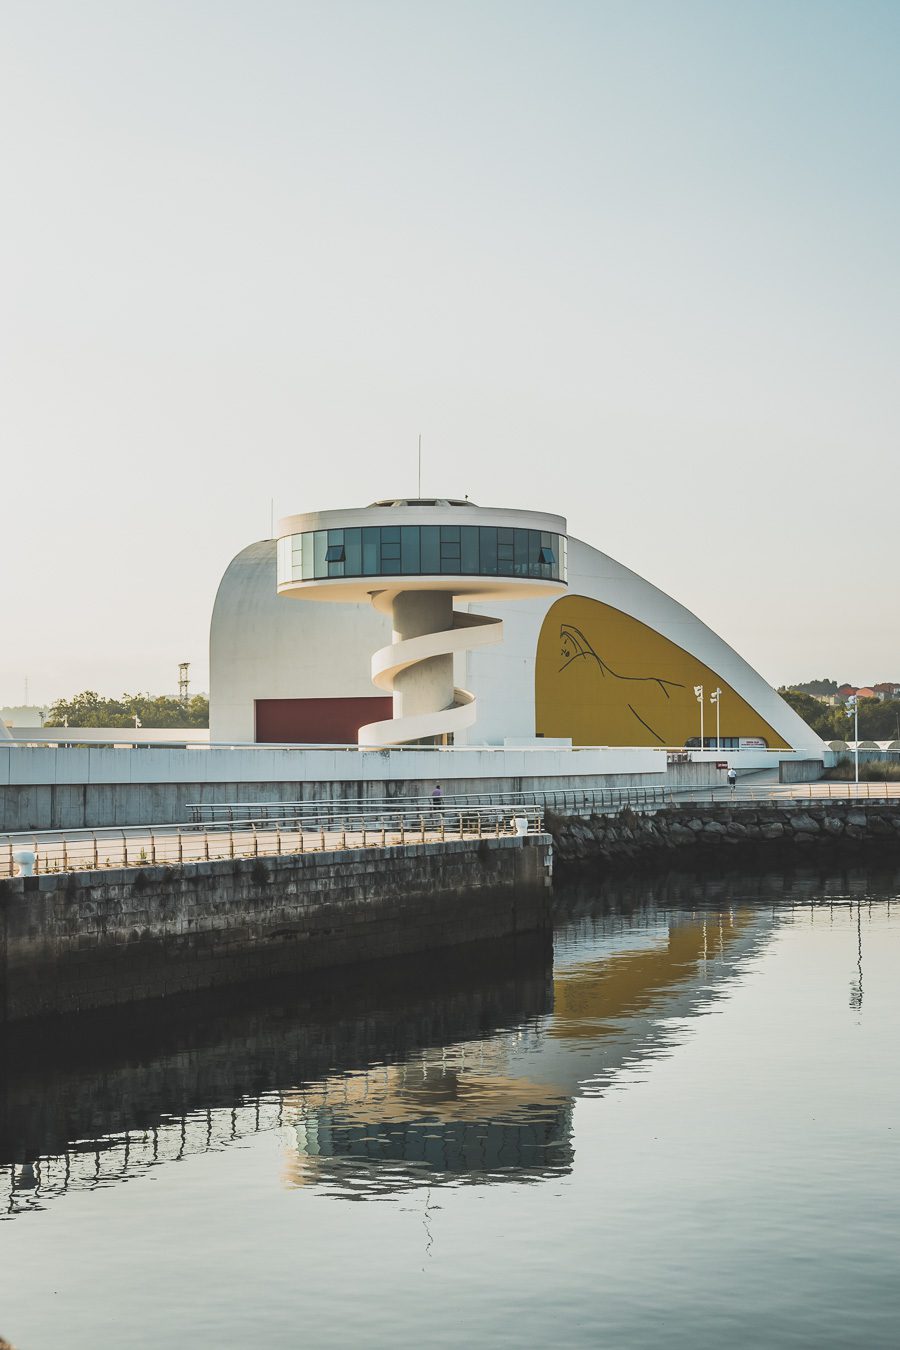 Explorez Aviles en Espagne, une ville des Asturies. Allez au Centre Niemeyer, passez du bon temps au pont Saint-Sébastien. Vivez un été en Espagne, entre traditions locales et aventures modernes. Réservez votre escapade et laissez-vous séduire par le nord de l'Espagne. Les Asturies en Espagne vous attendent !